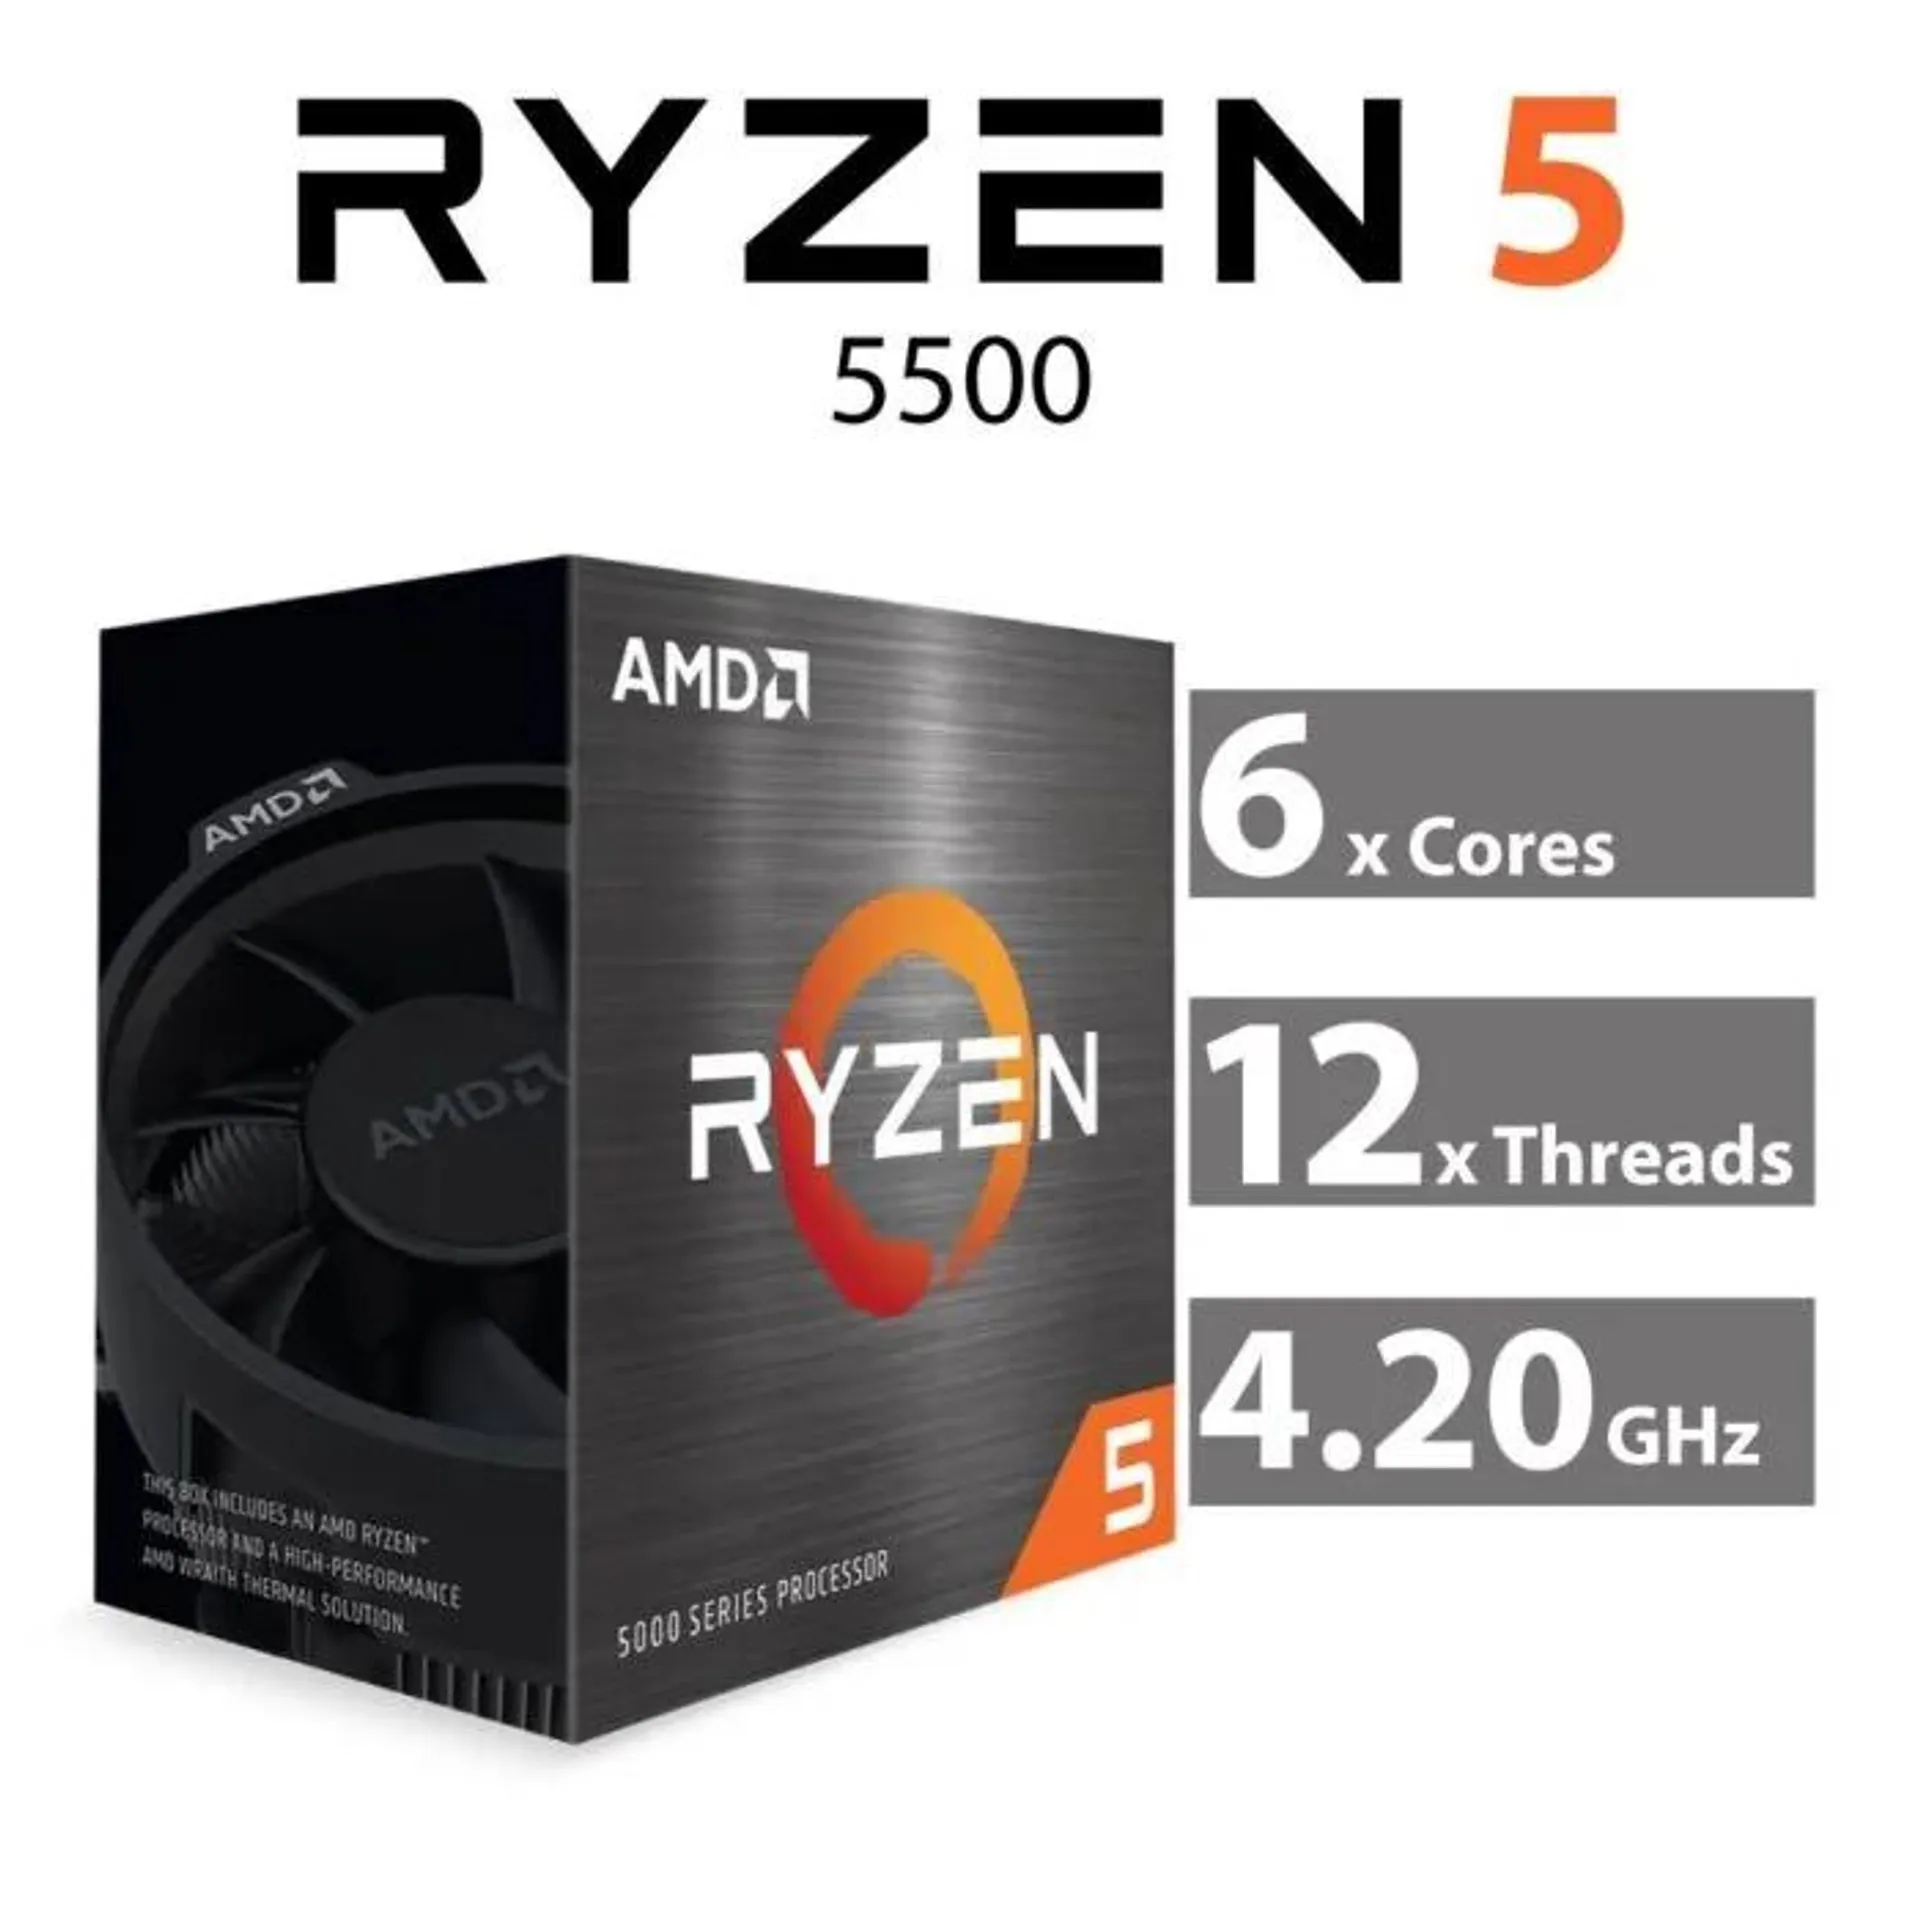 AMD Ryzen 5 5500 Cezanne 6-Core 3.60GHz AM4 65W 100-100000457BOX Desktop Processor